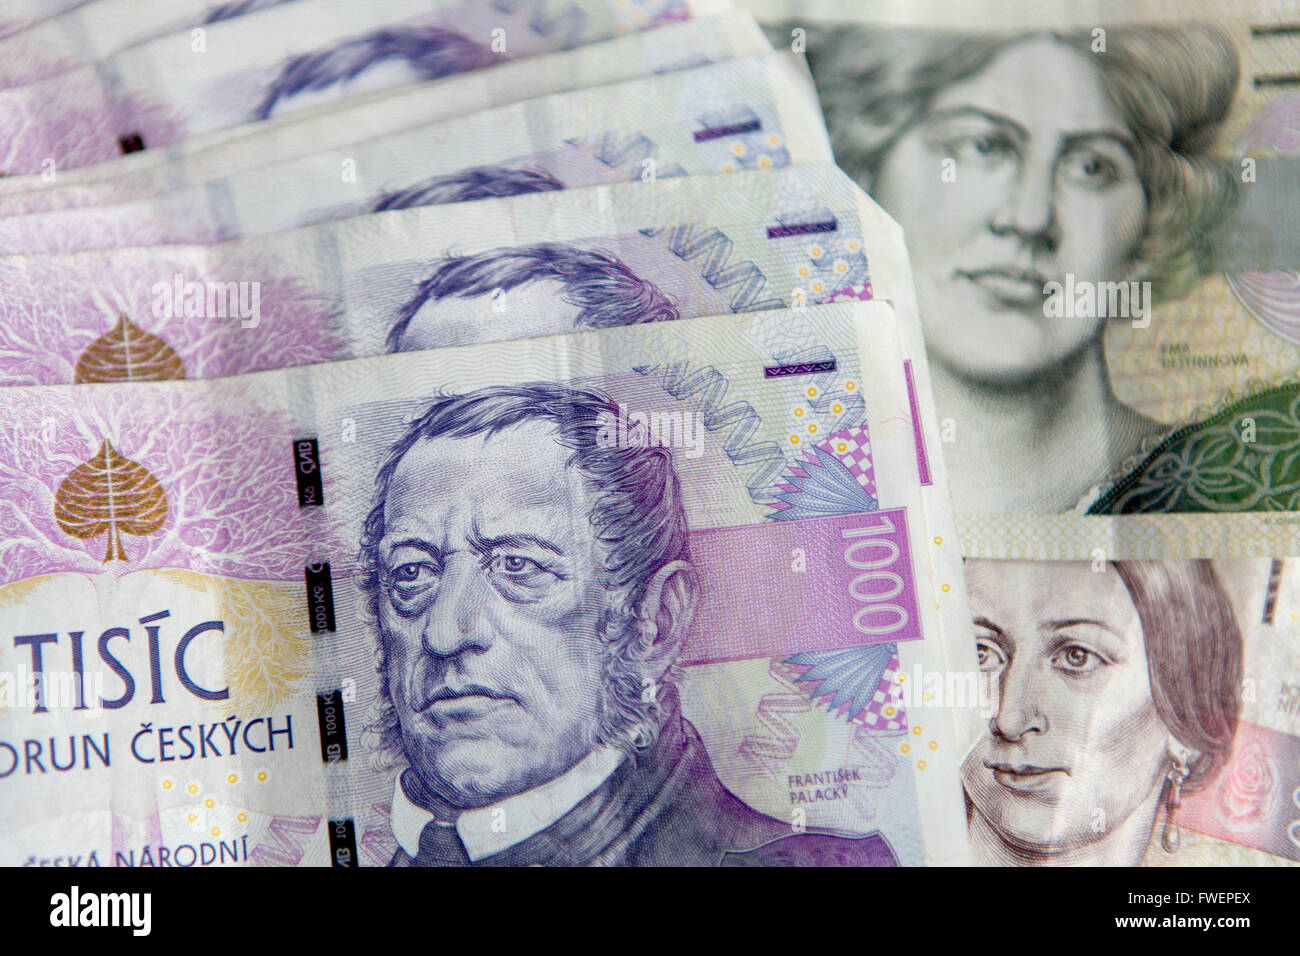 Czech banknotes, Czech paper money Czech currency Stock Photo